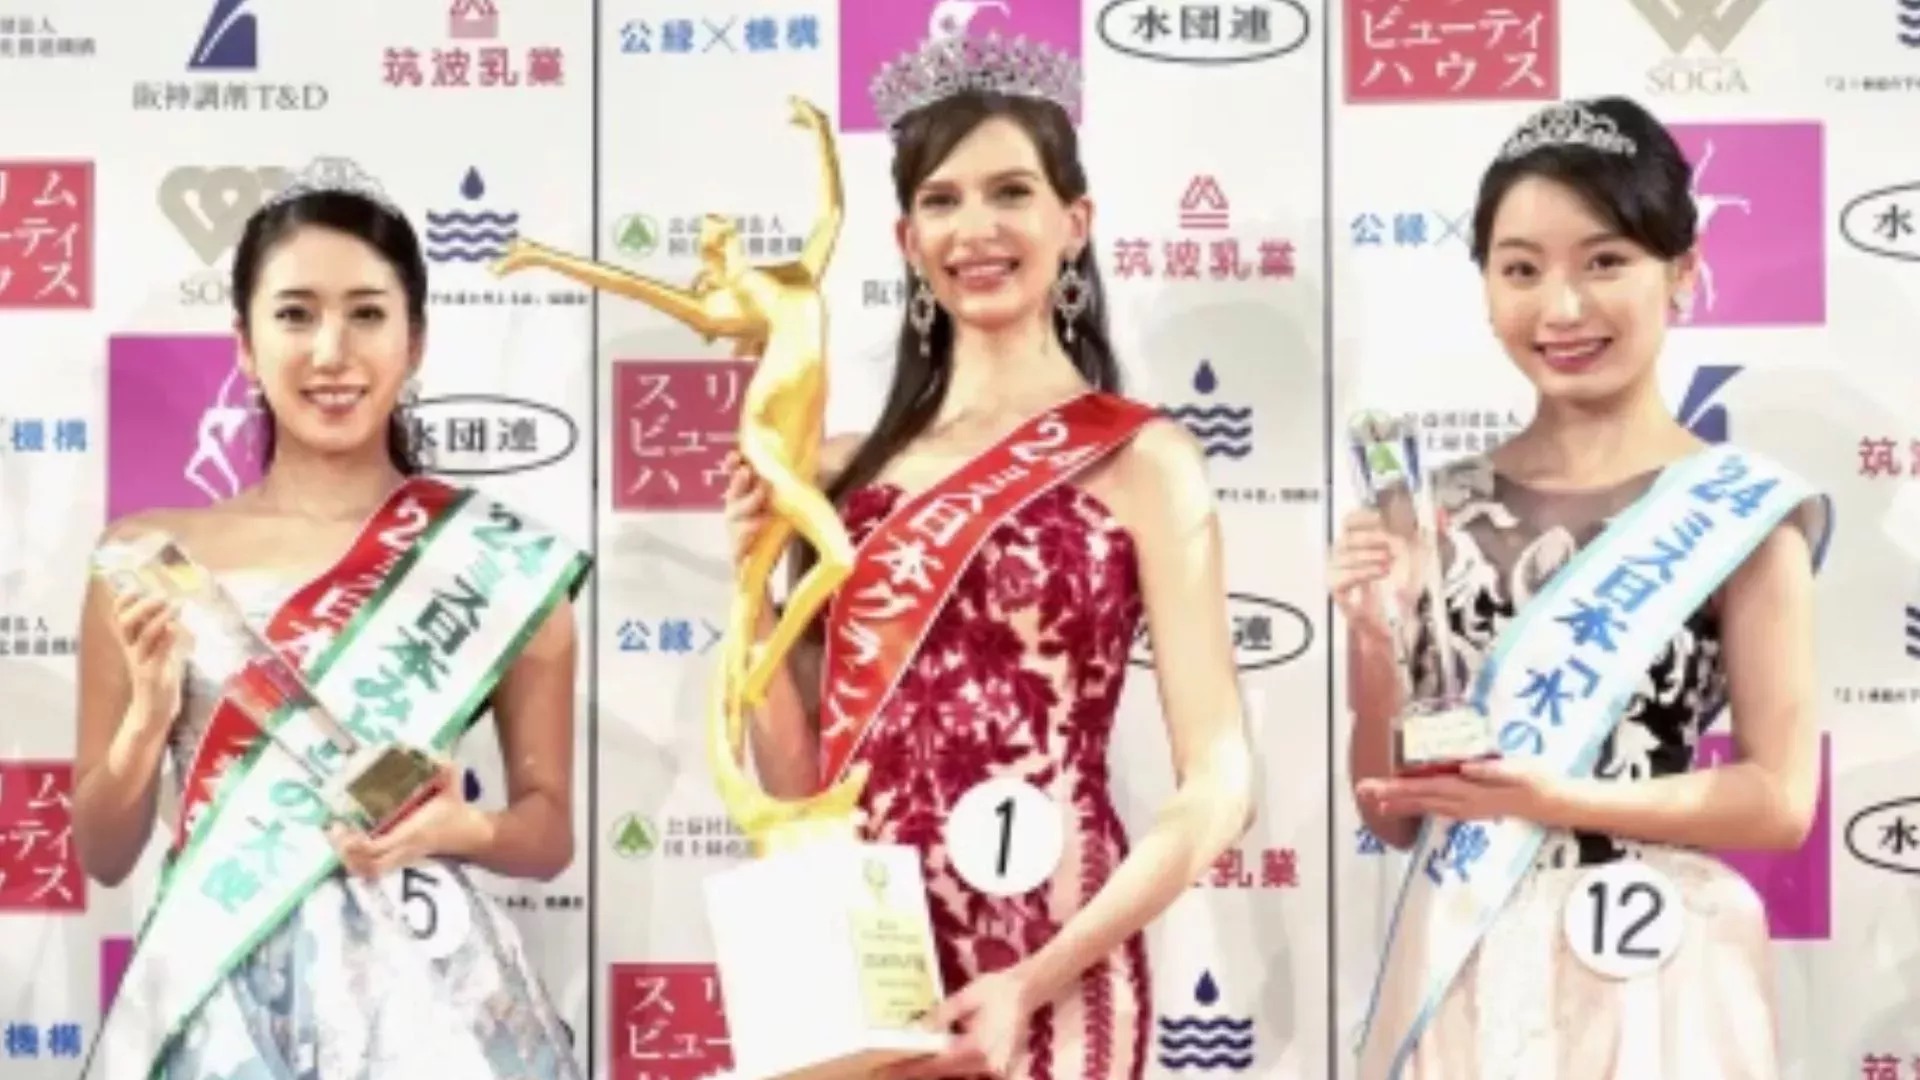 La ucraniana Miss Japón renuncia a su corona tras salir a la luz su romance con un tabloide - National | Globalnews.ca